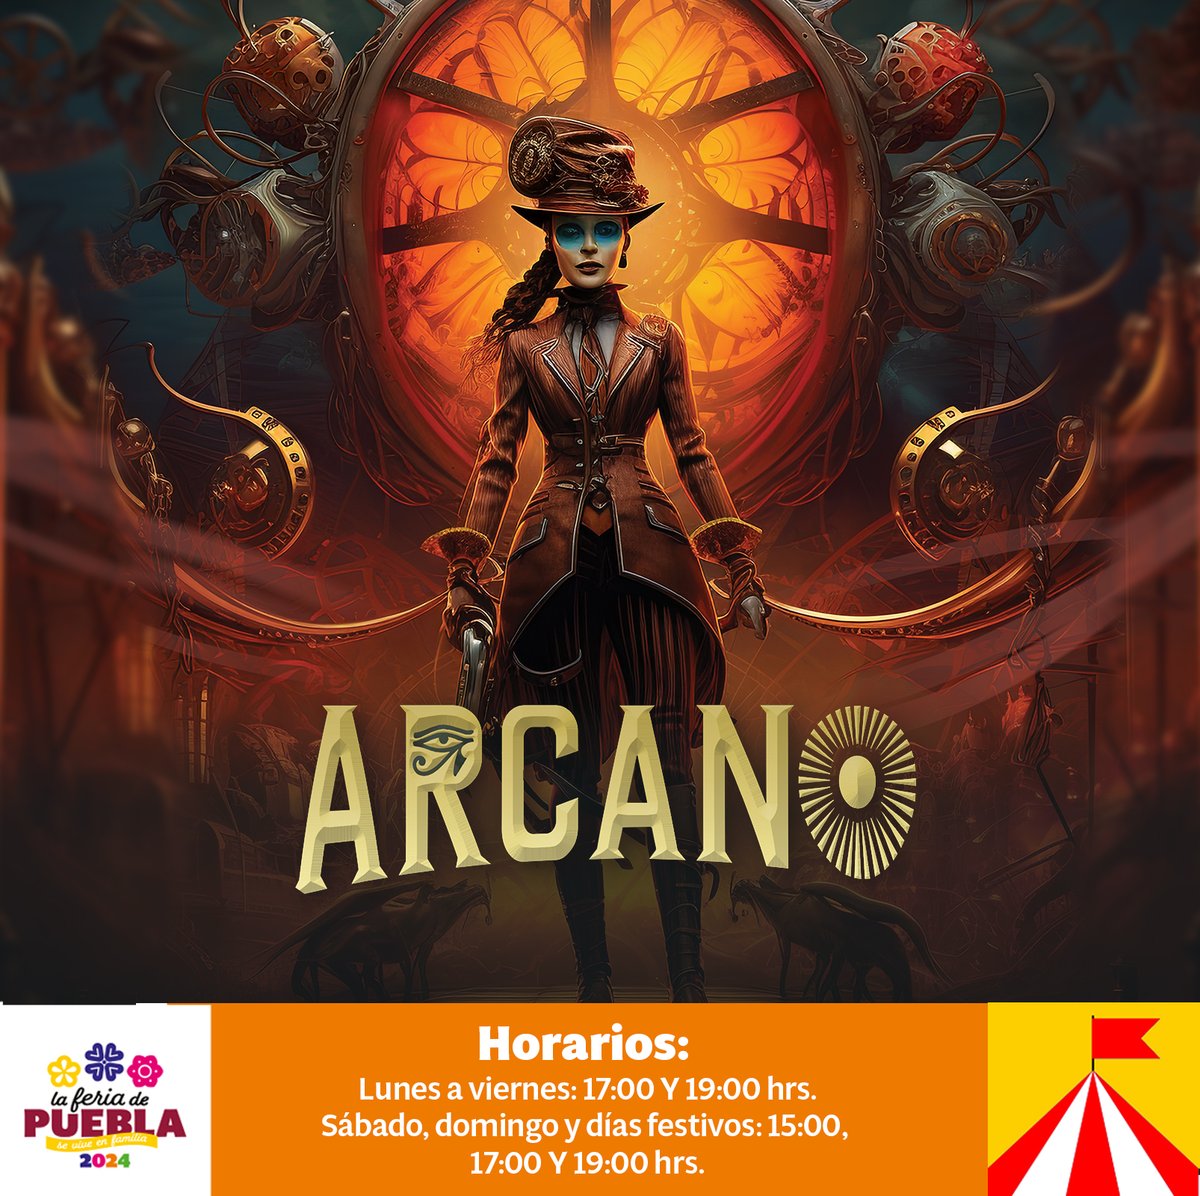 En la #FeriaDePuebla, la diversión está asegurada con 'Arcano' ¡No te lo puedes perder! Acrobacias impresionantes y destreza física te esperan en este espectáculo circense.